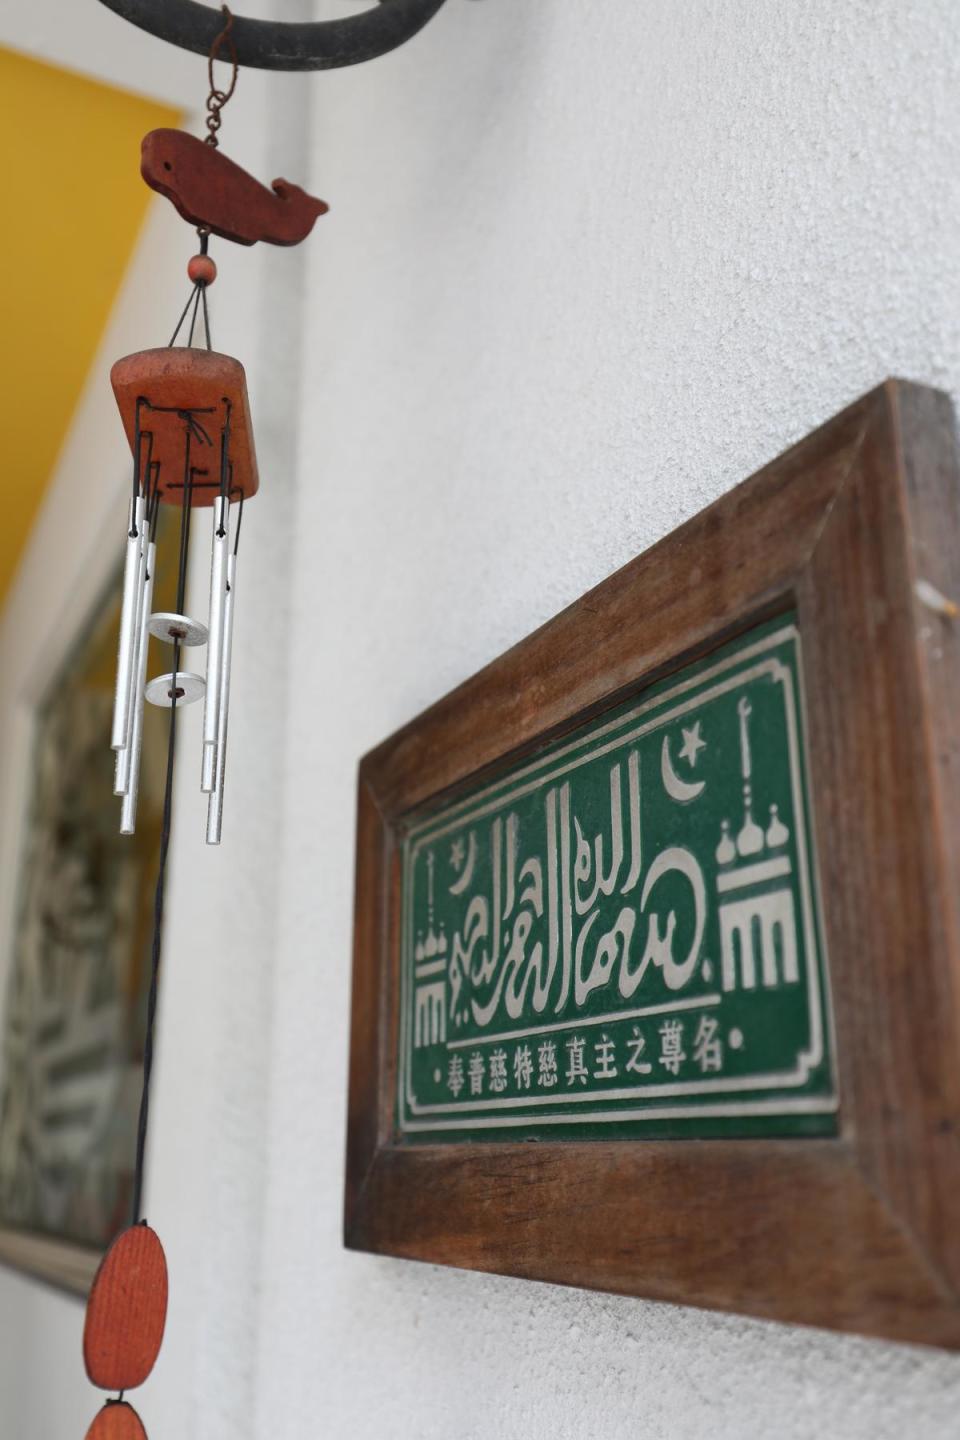 門口的這句「奉普慈特慈真主之尊名」標語，在許多回族人家裡都看得到。